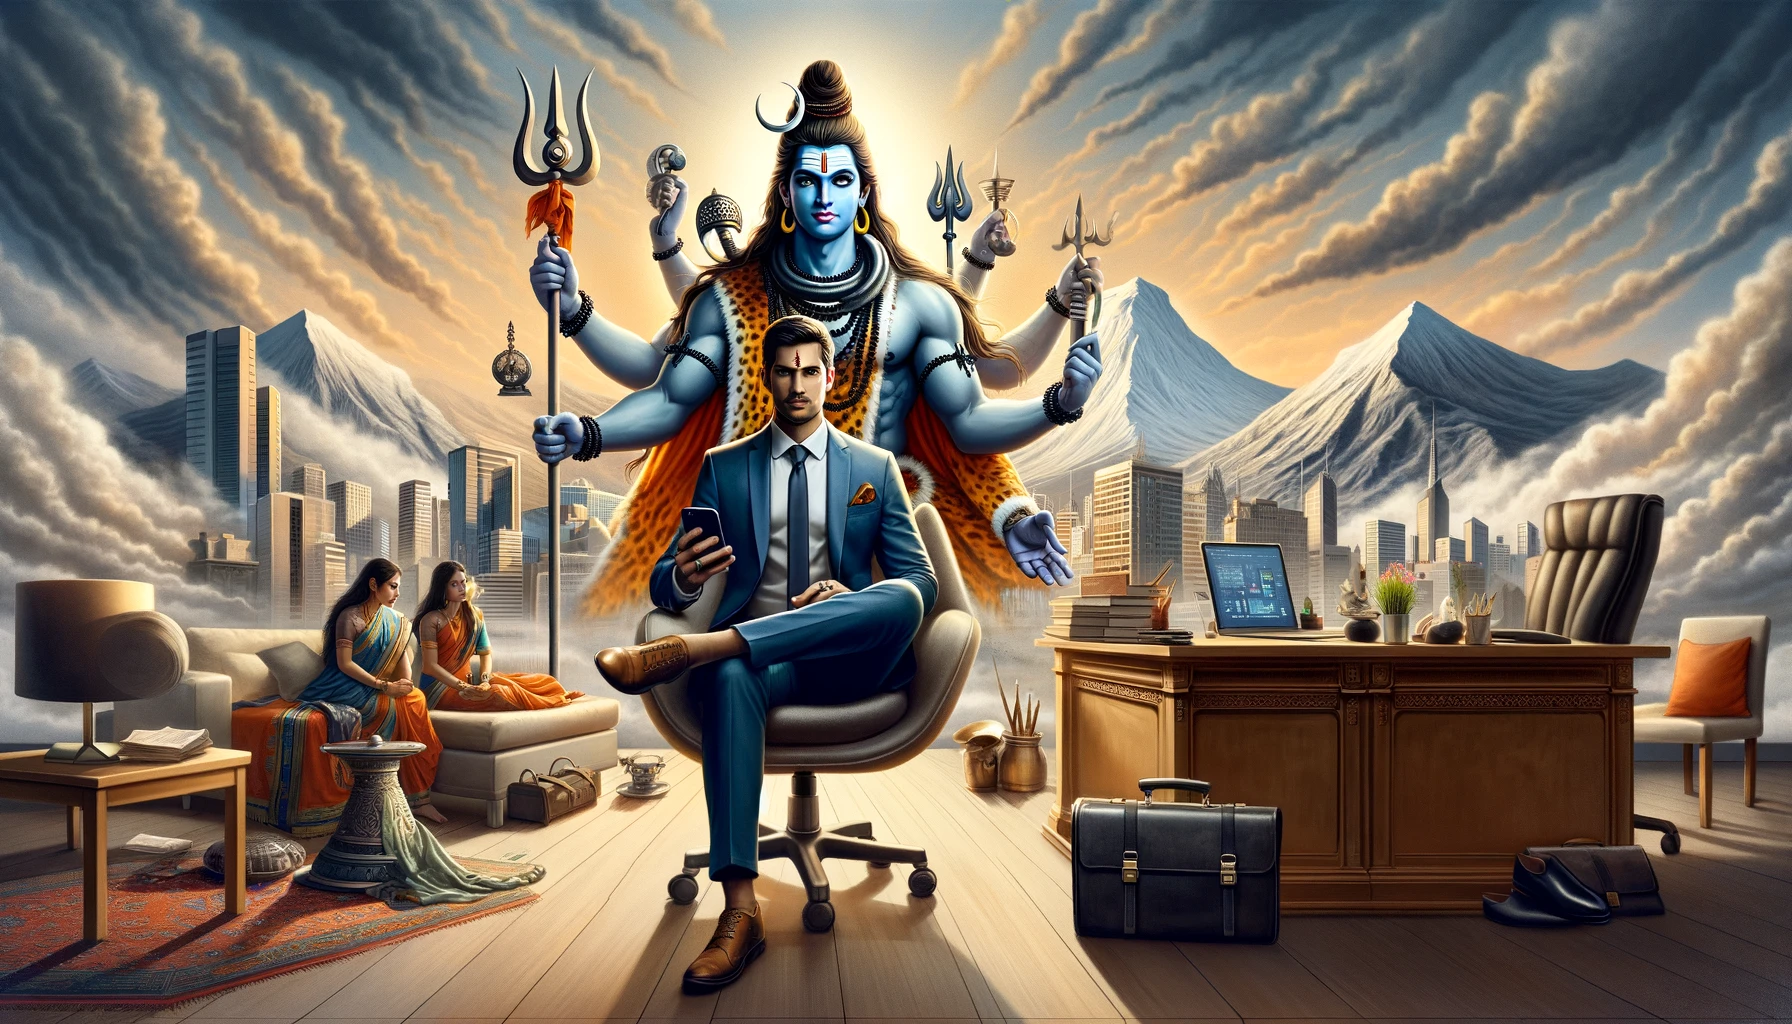 Divine Guidance for Entrepreneurs from Lord Shiva